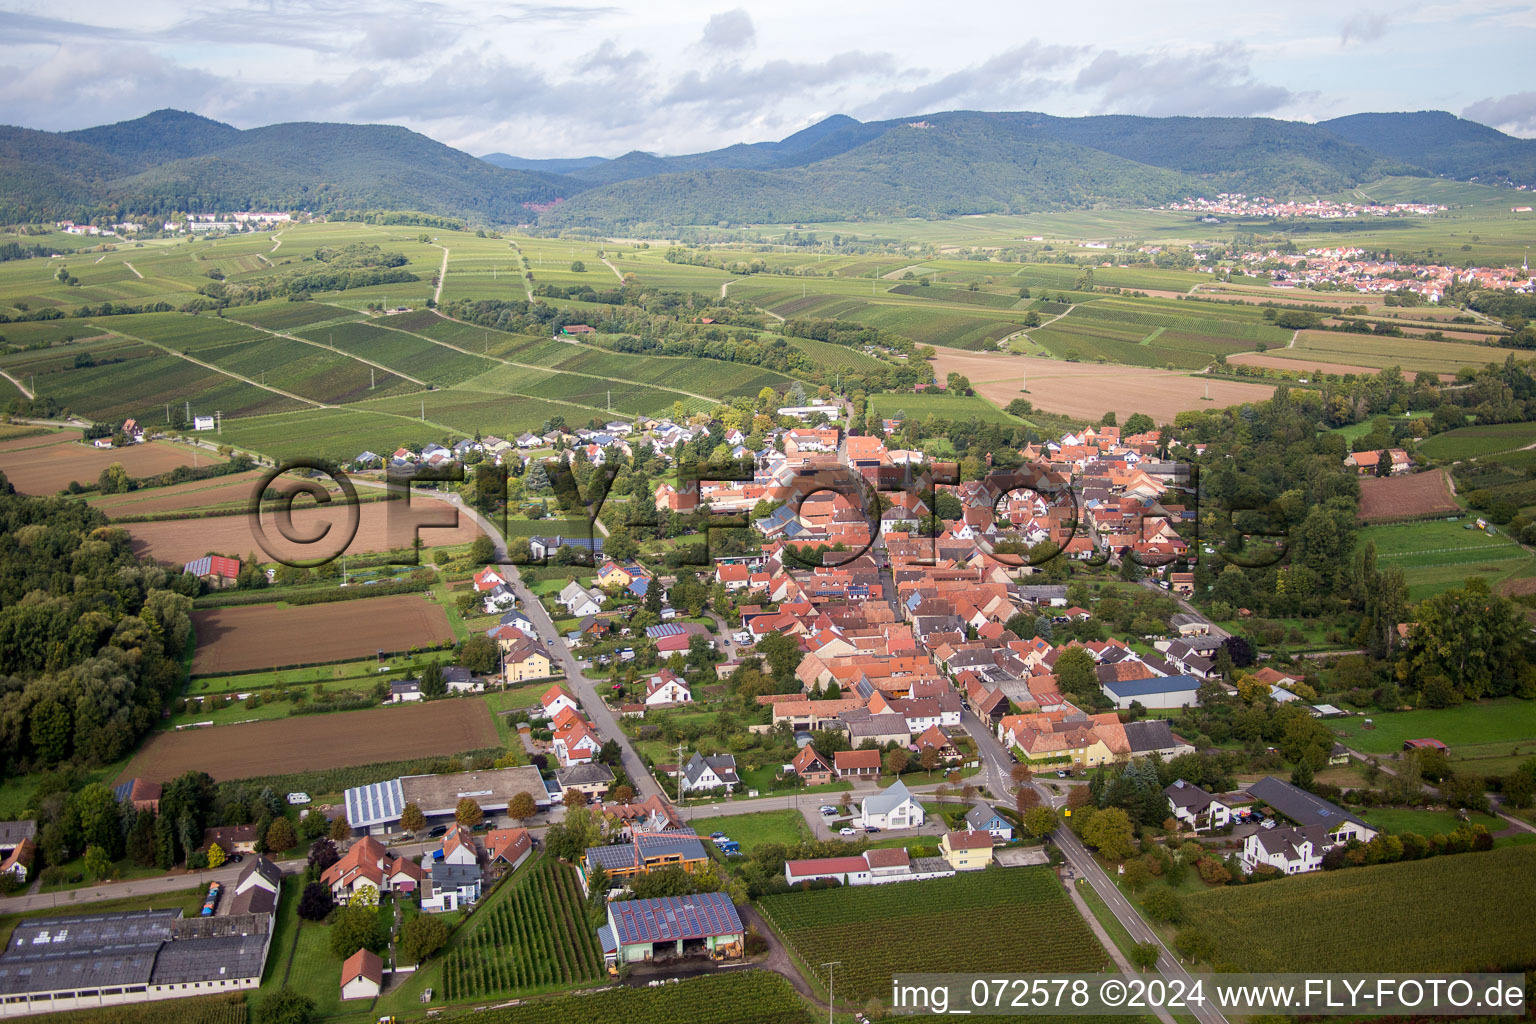 Village - view on the edge of agricultural fields and wine yards in the district Heuchelheim in Heuchelheim-Klingen in the state Rhineland-Palatinate, Germany